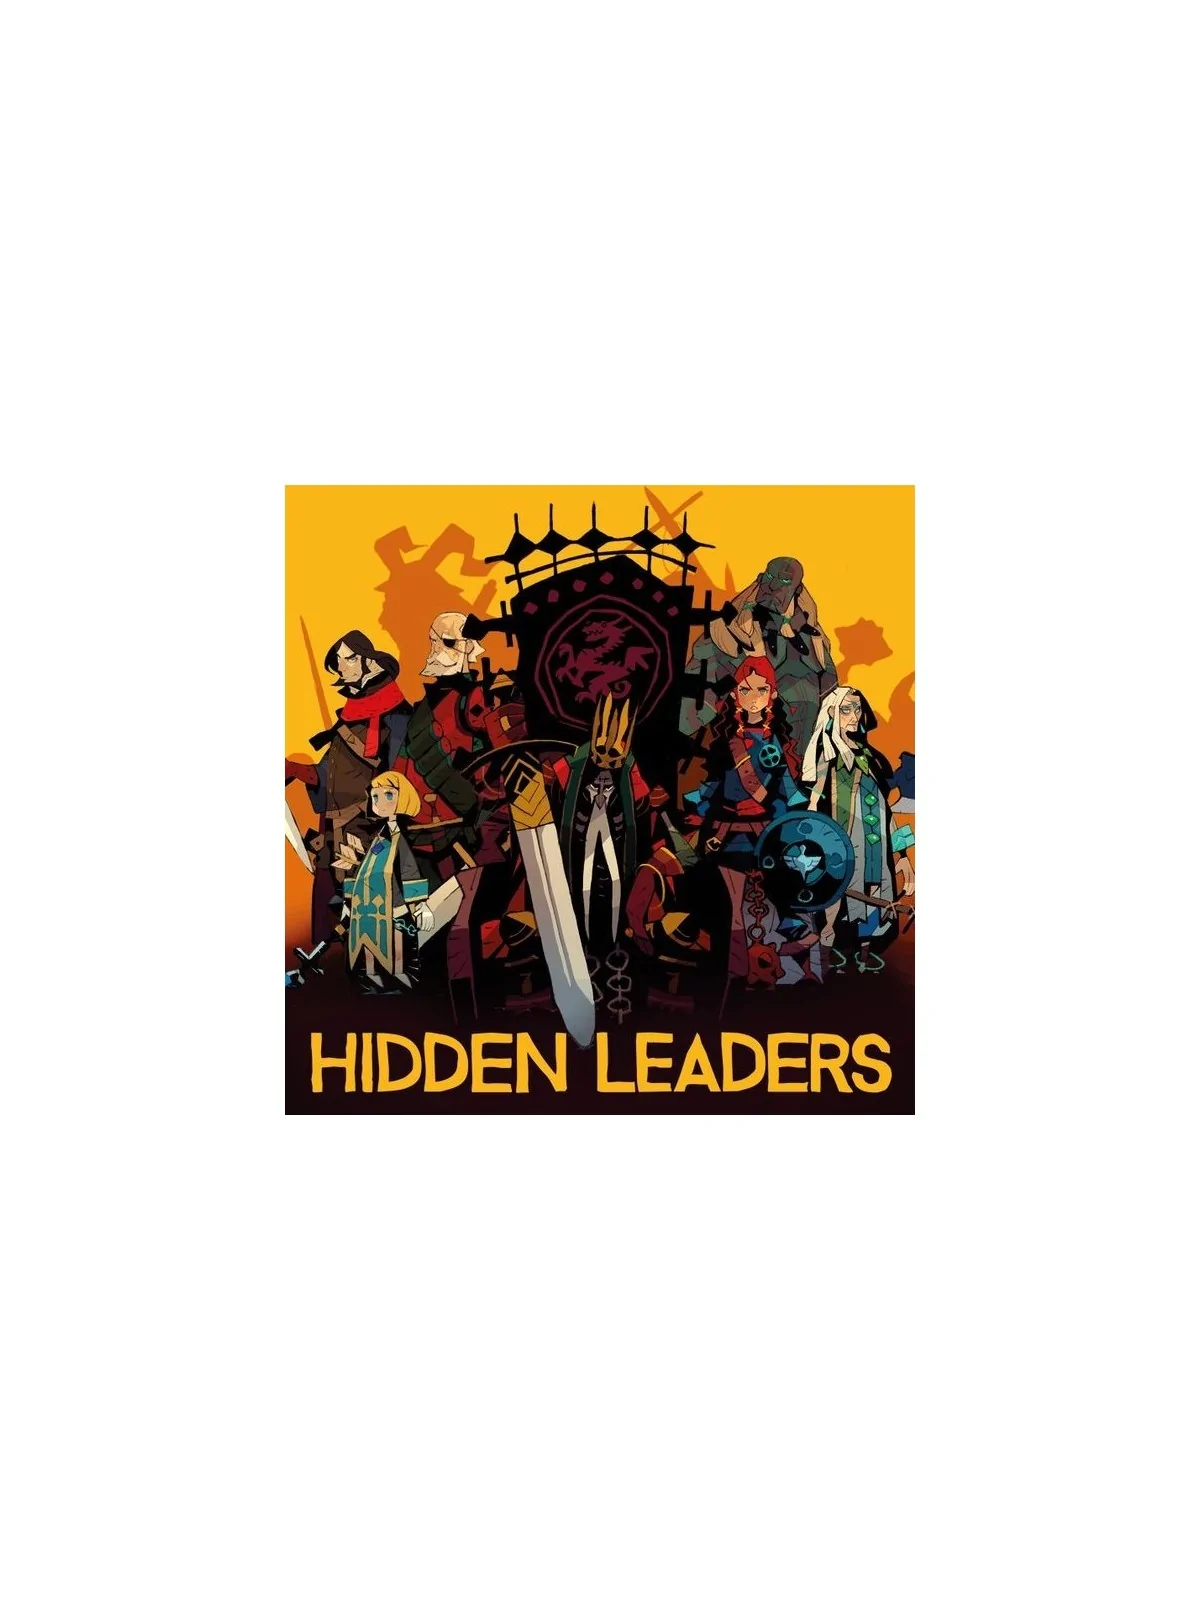 Comprar Hidden Leaders barato al mejor precio 22,49 € de Bumble3ee